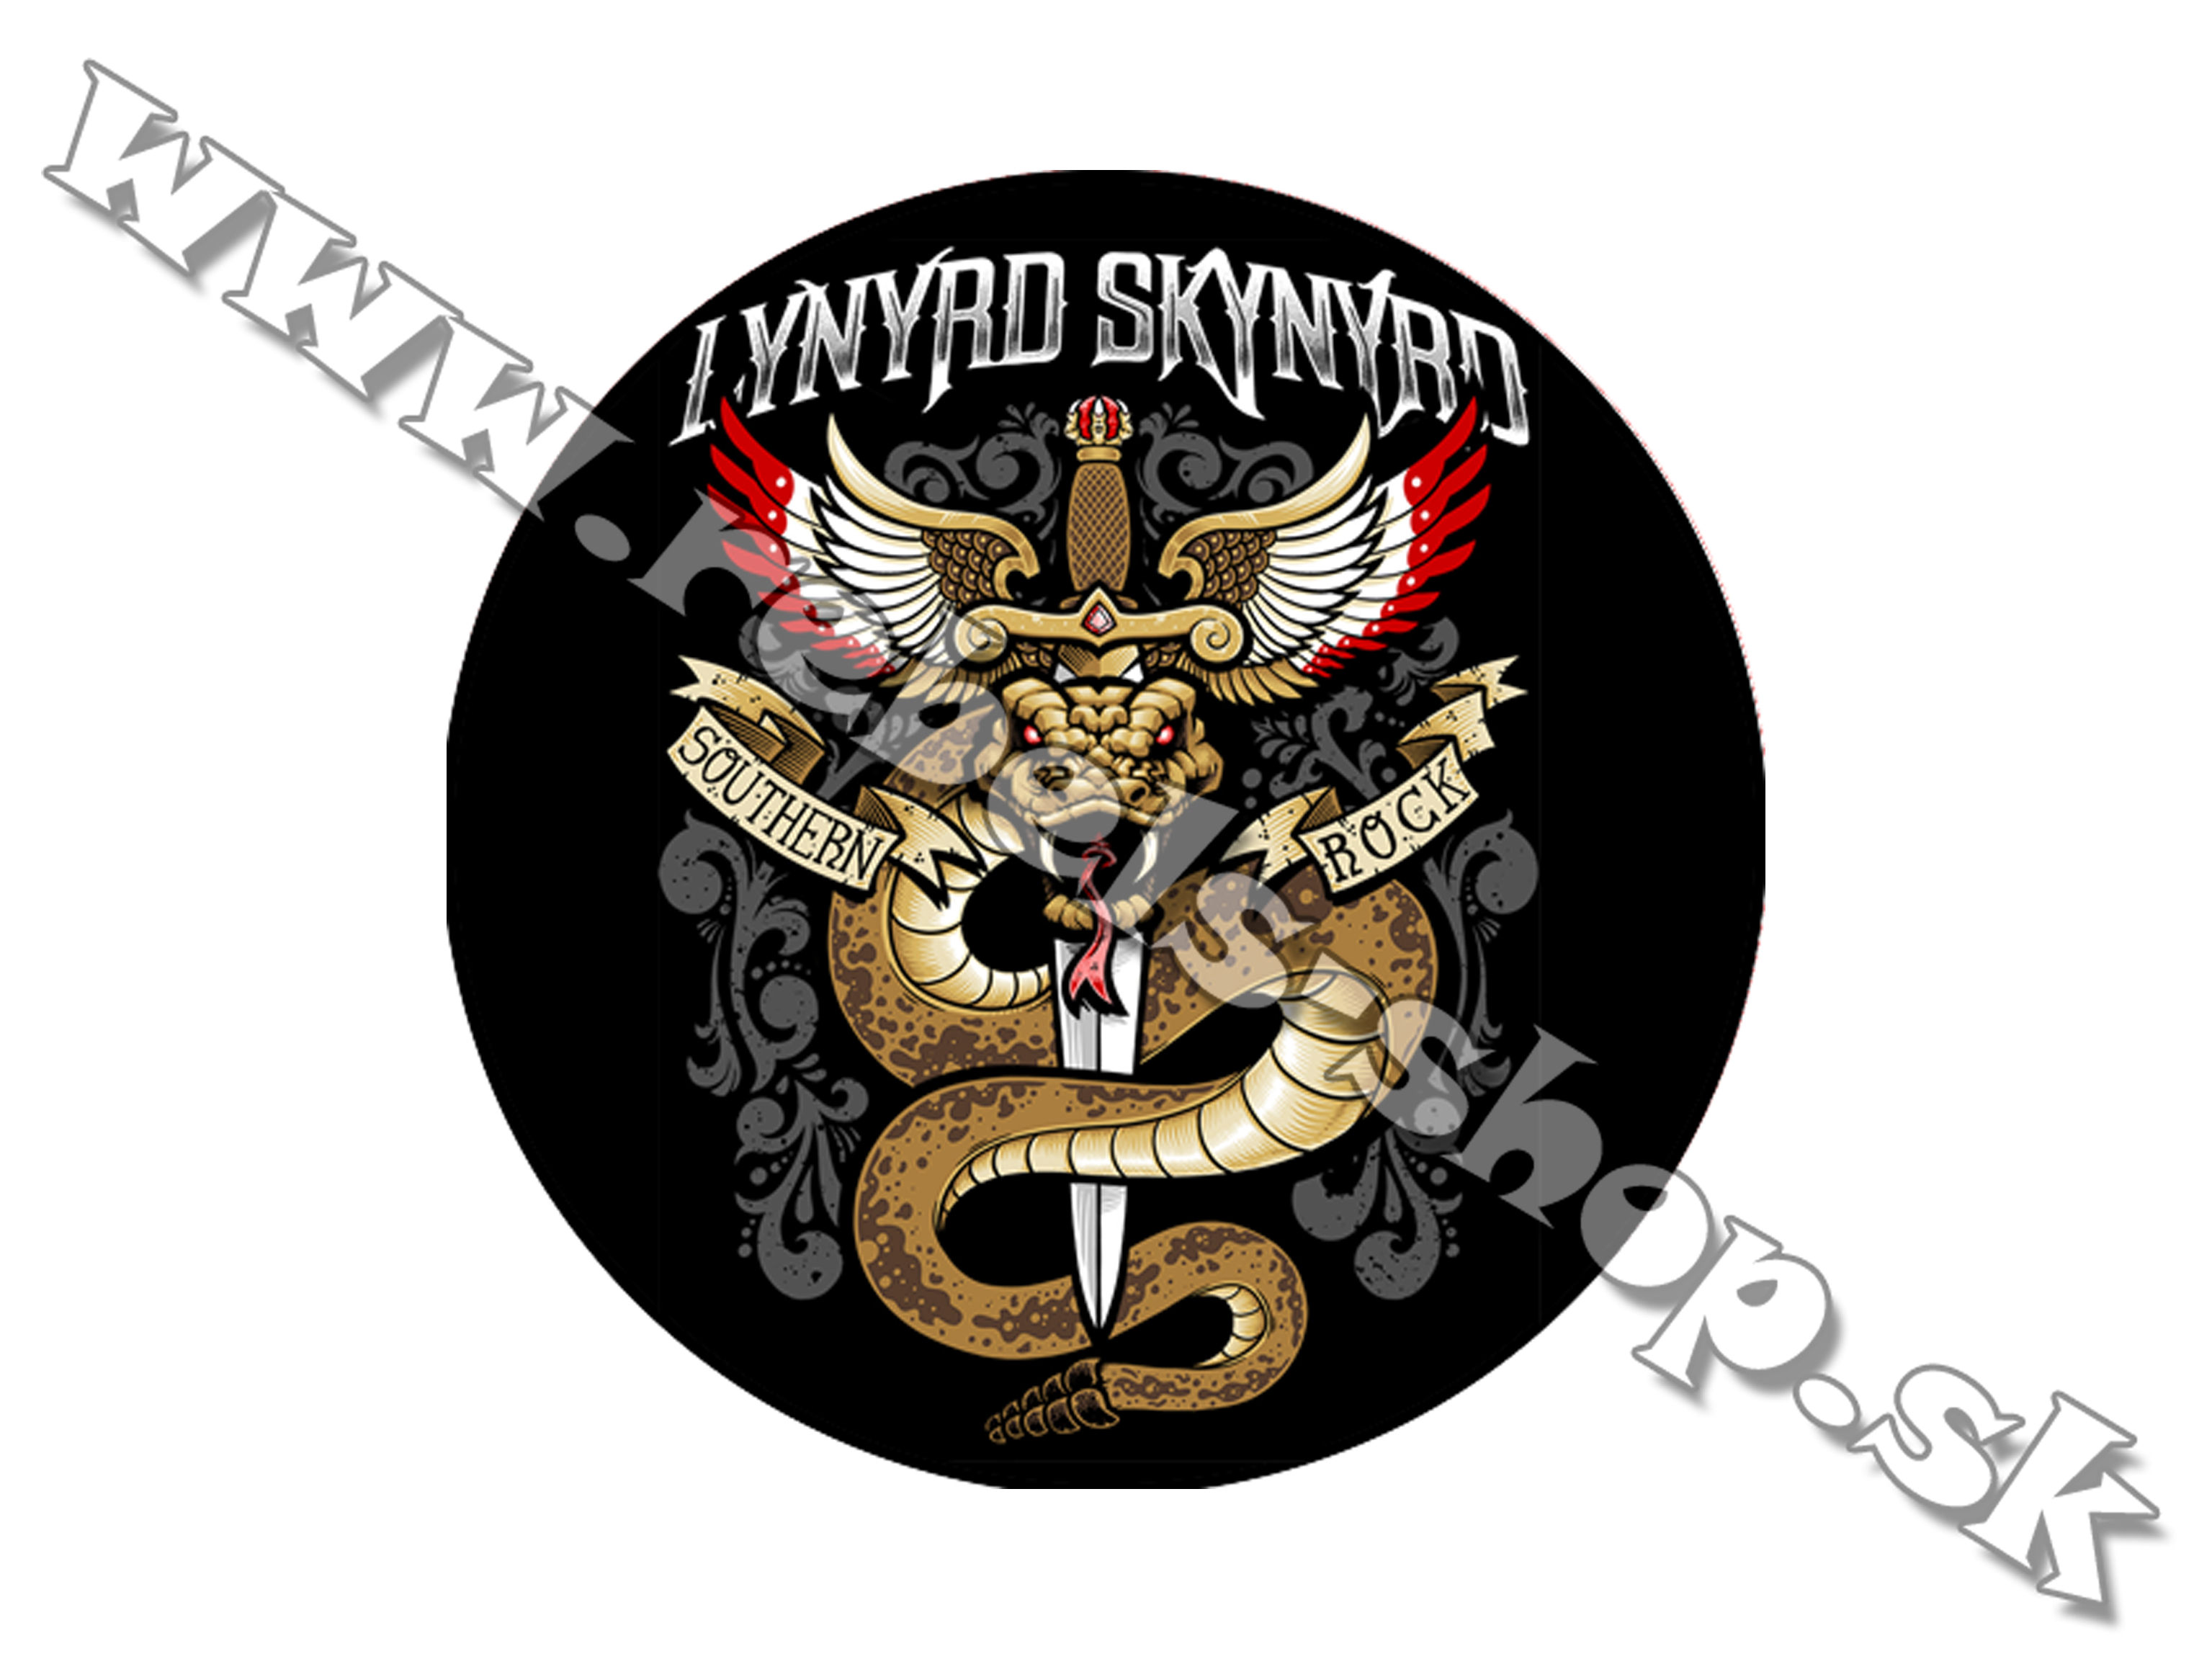 Odznak "Lynyrd Skynyrd"